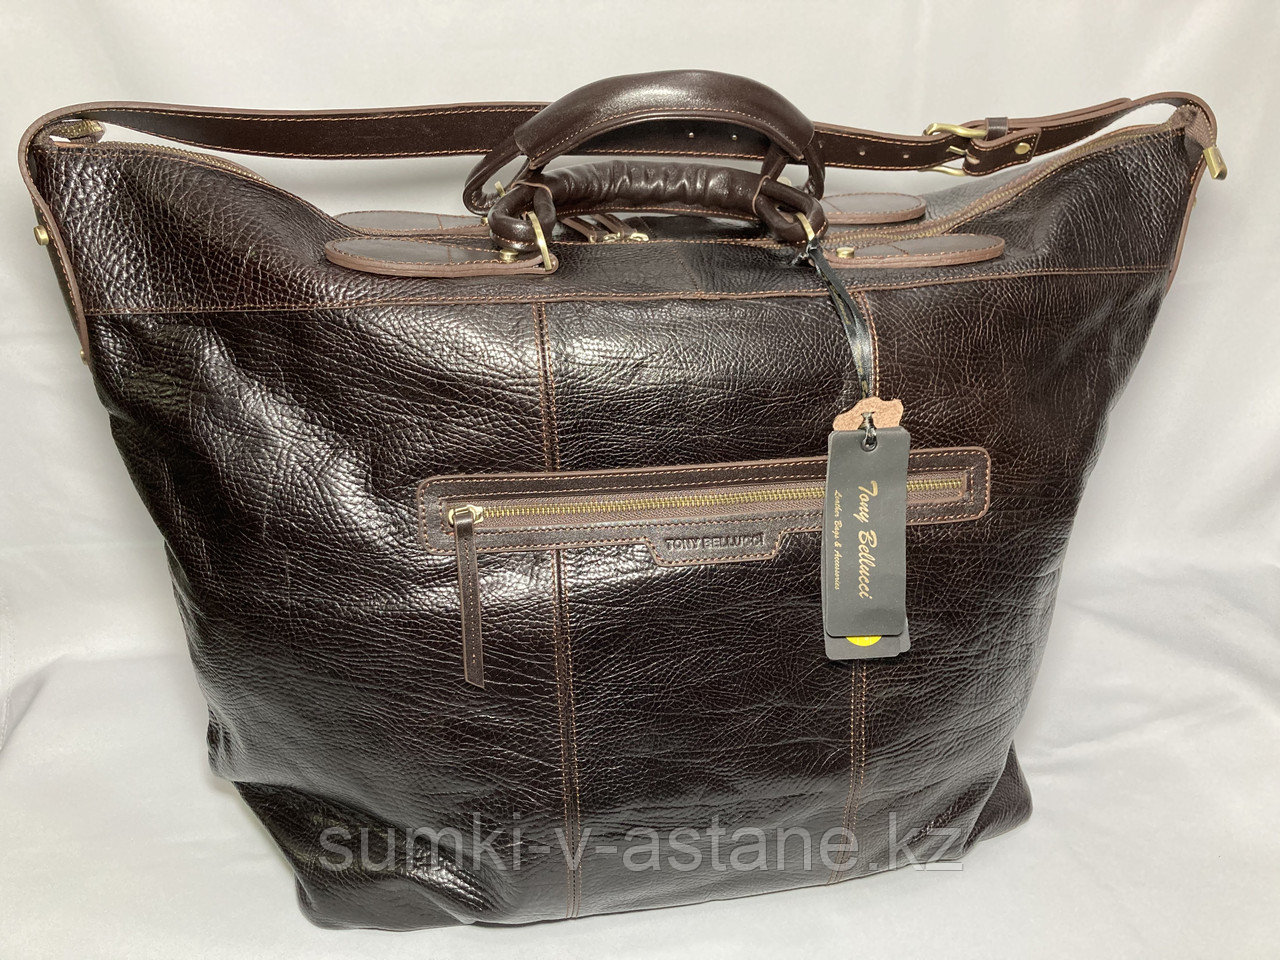 Дорожная сумка из кожи от итальянского бренда "TONY BELLUCCI" (высота 40 см, ширина 47 см, глубина 20 см)